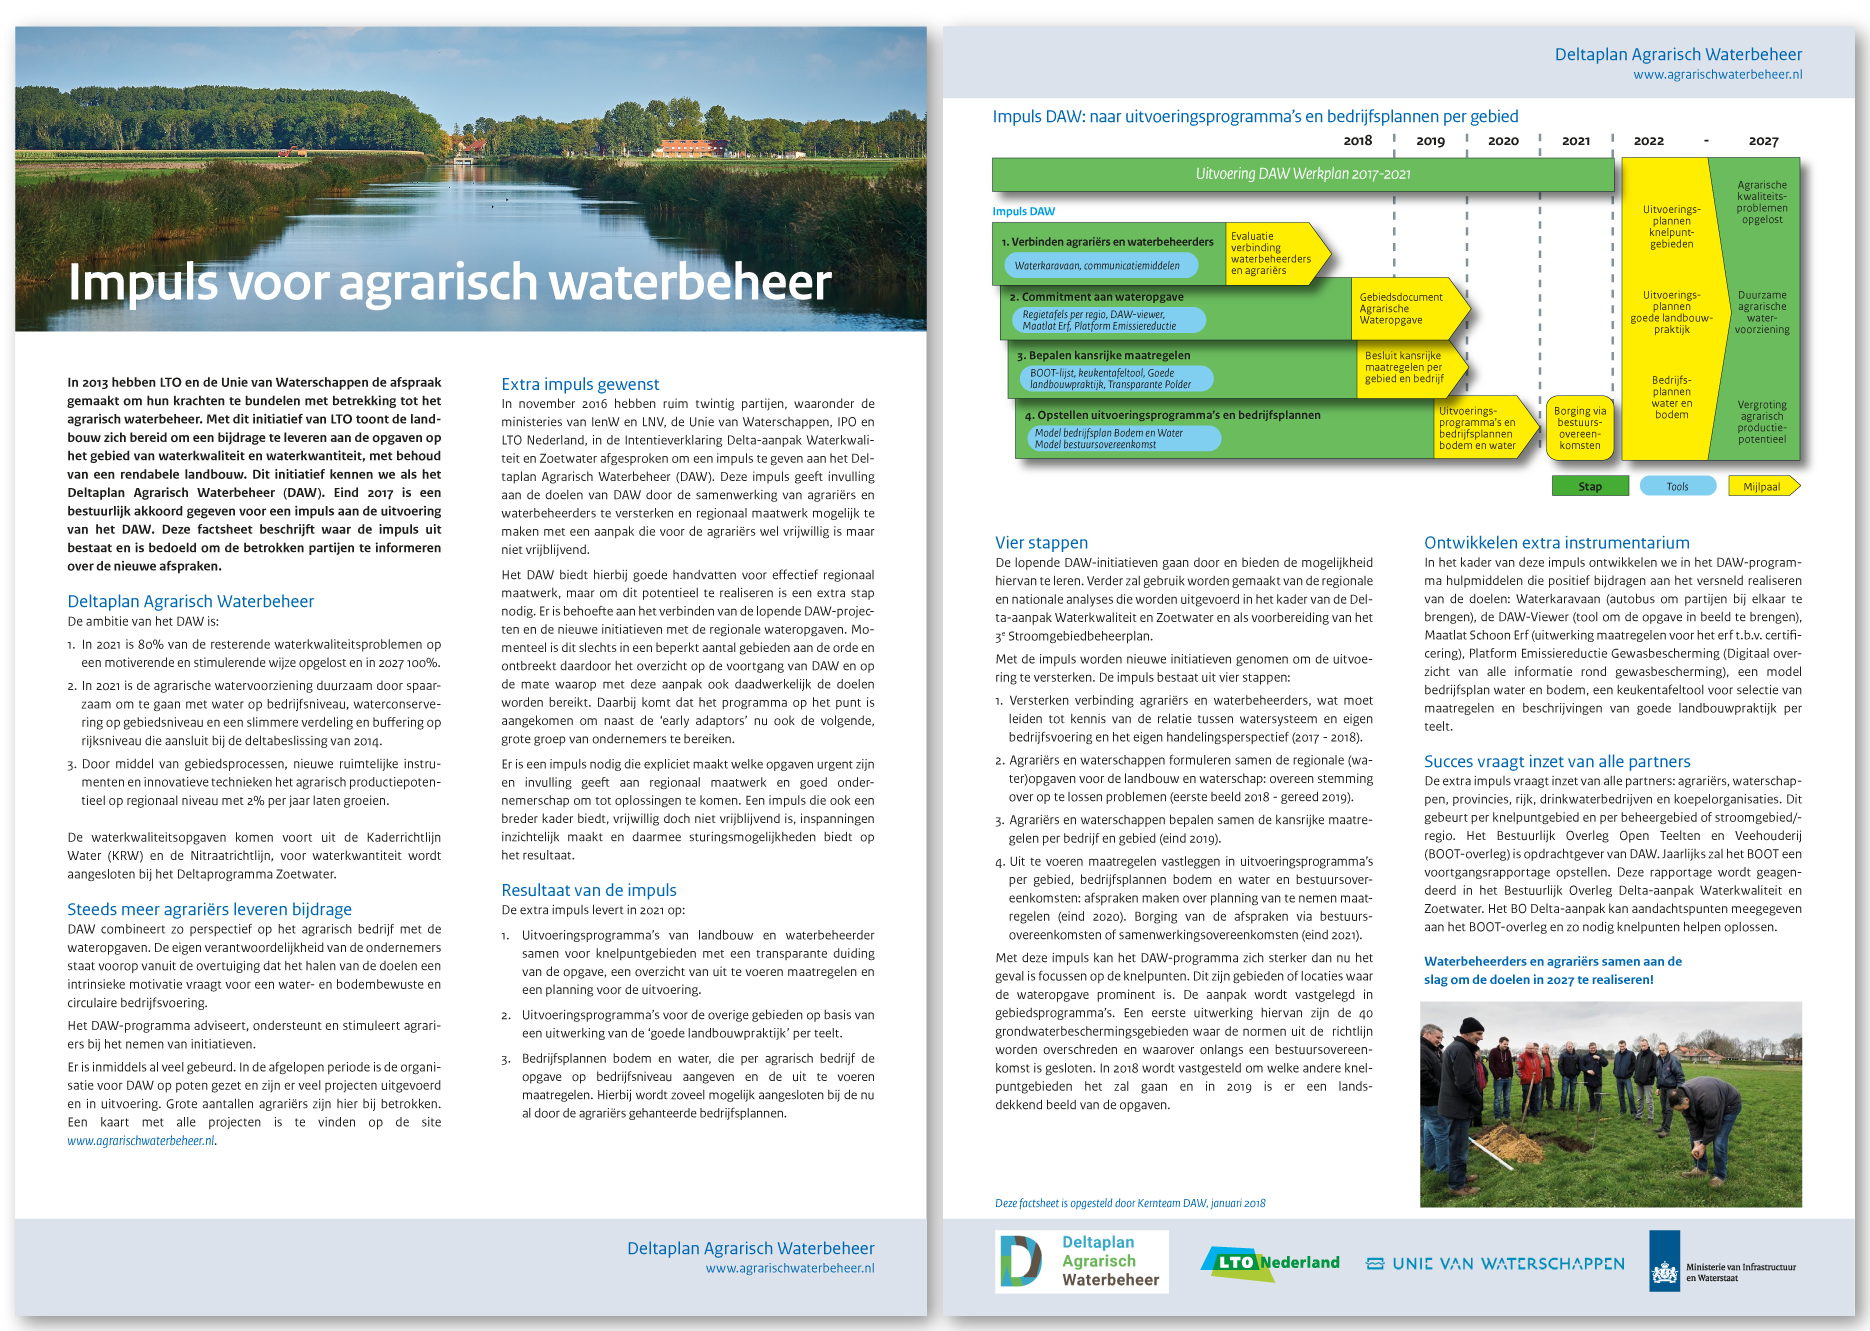 Impuls voor agrarisch waterbeheer (DAW)